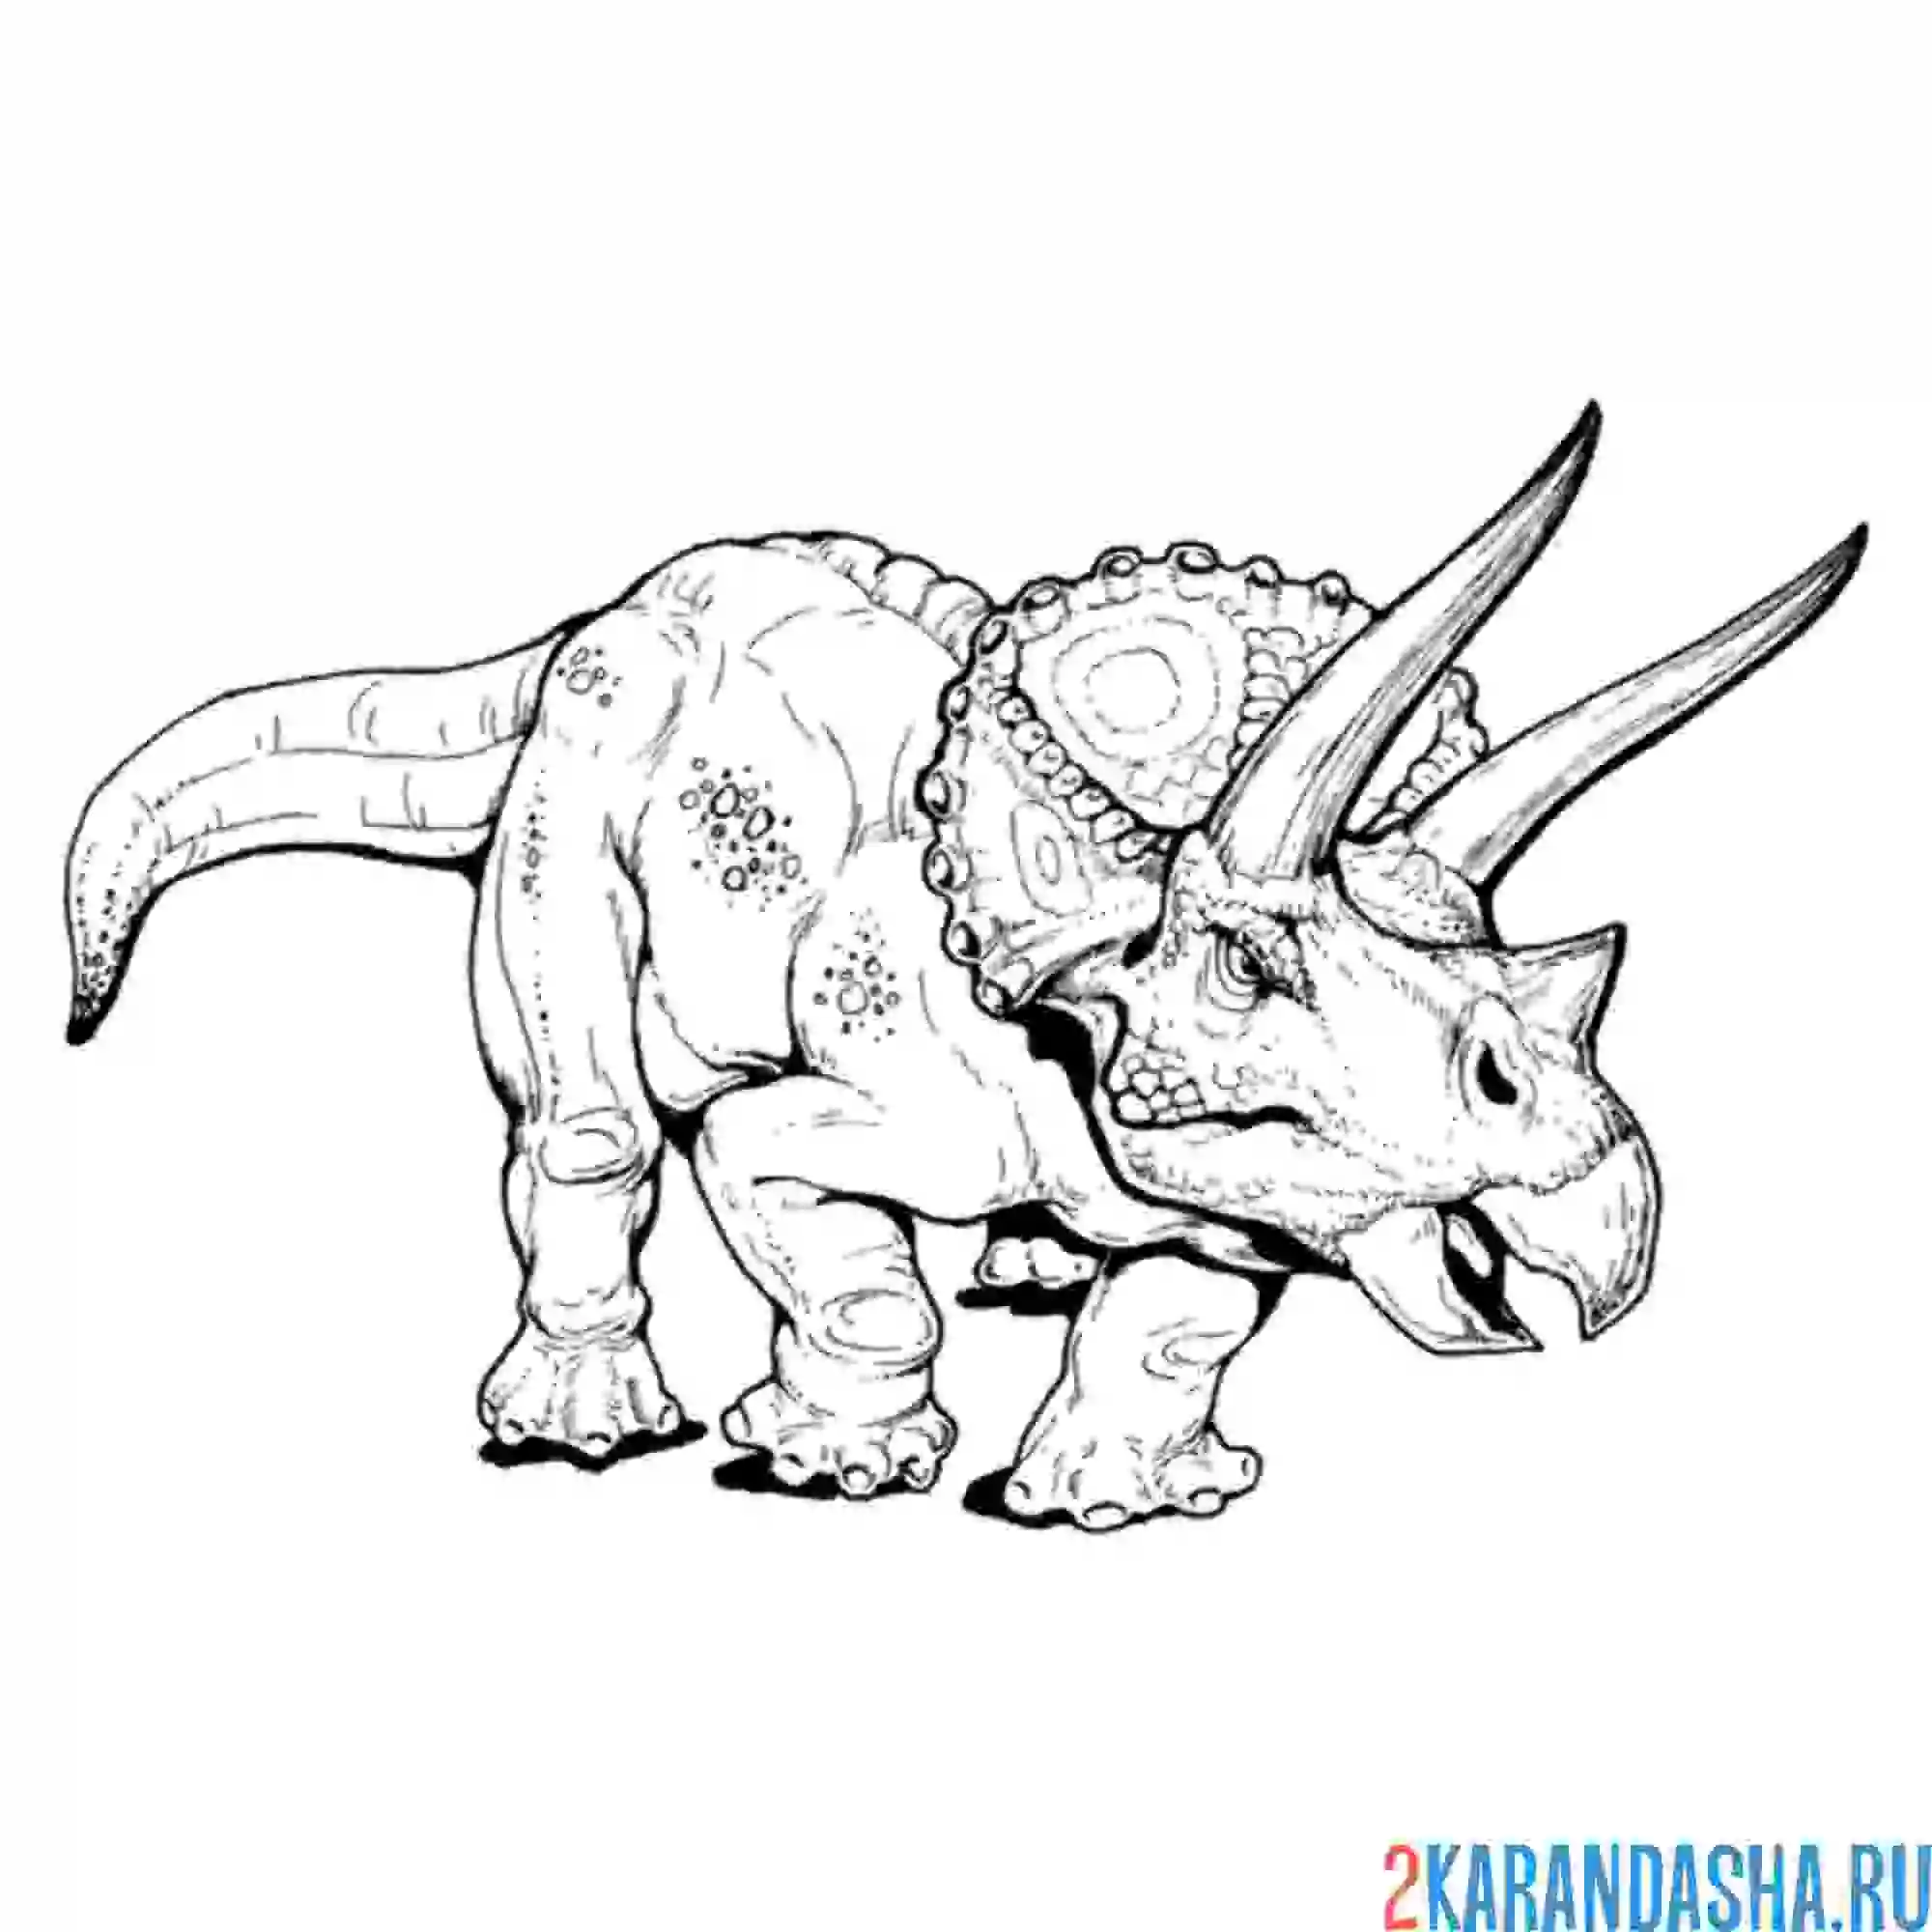 Динозавры раскраска а4. Тарбозавр и Трицератопс. Трицератопс cartoon спереди. Трицератопс динозавр рисунок для детей.